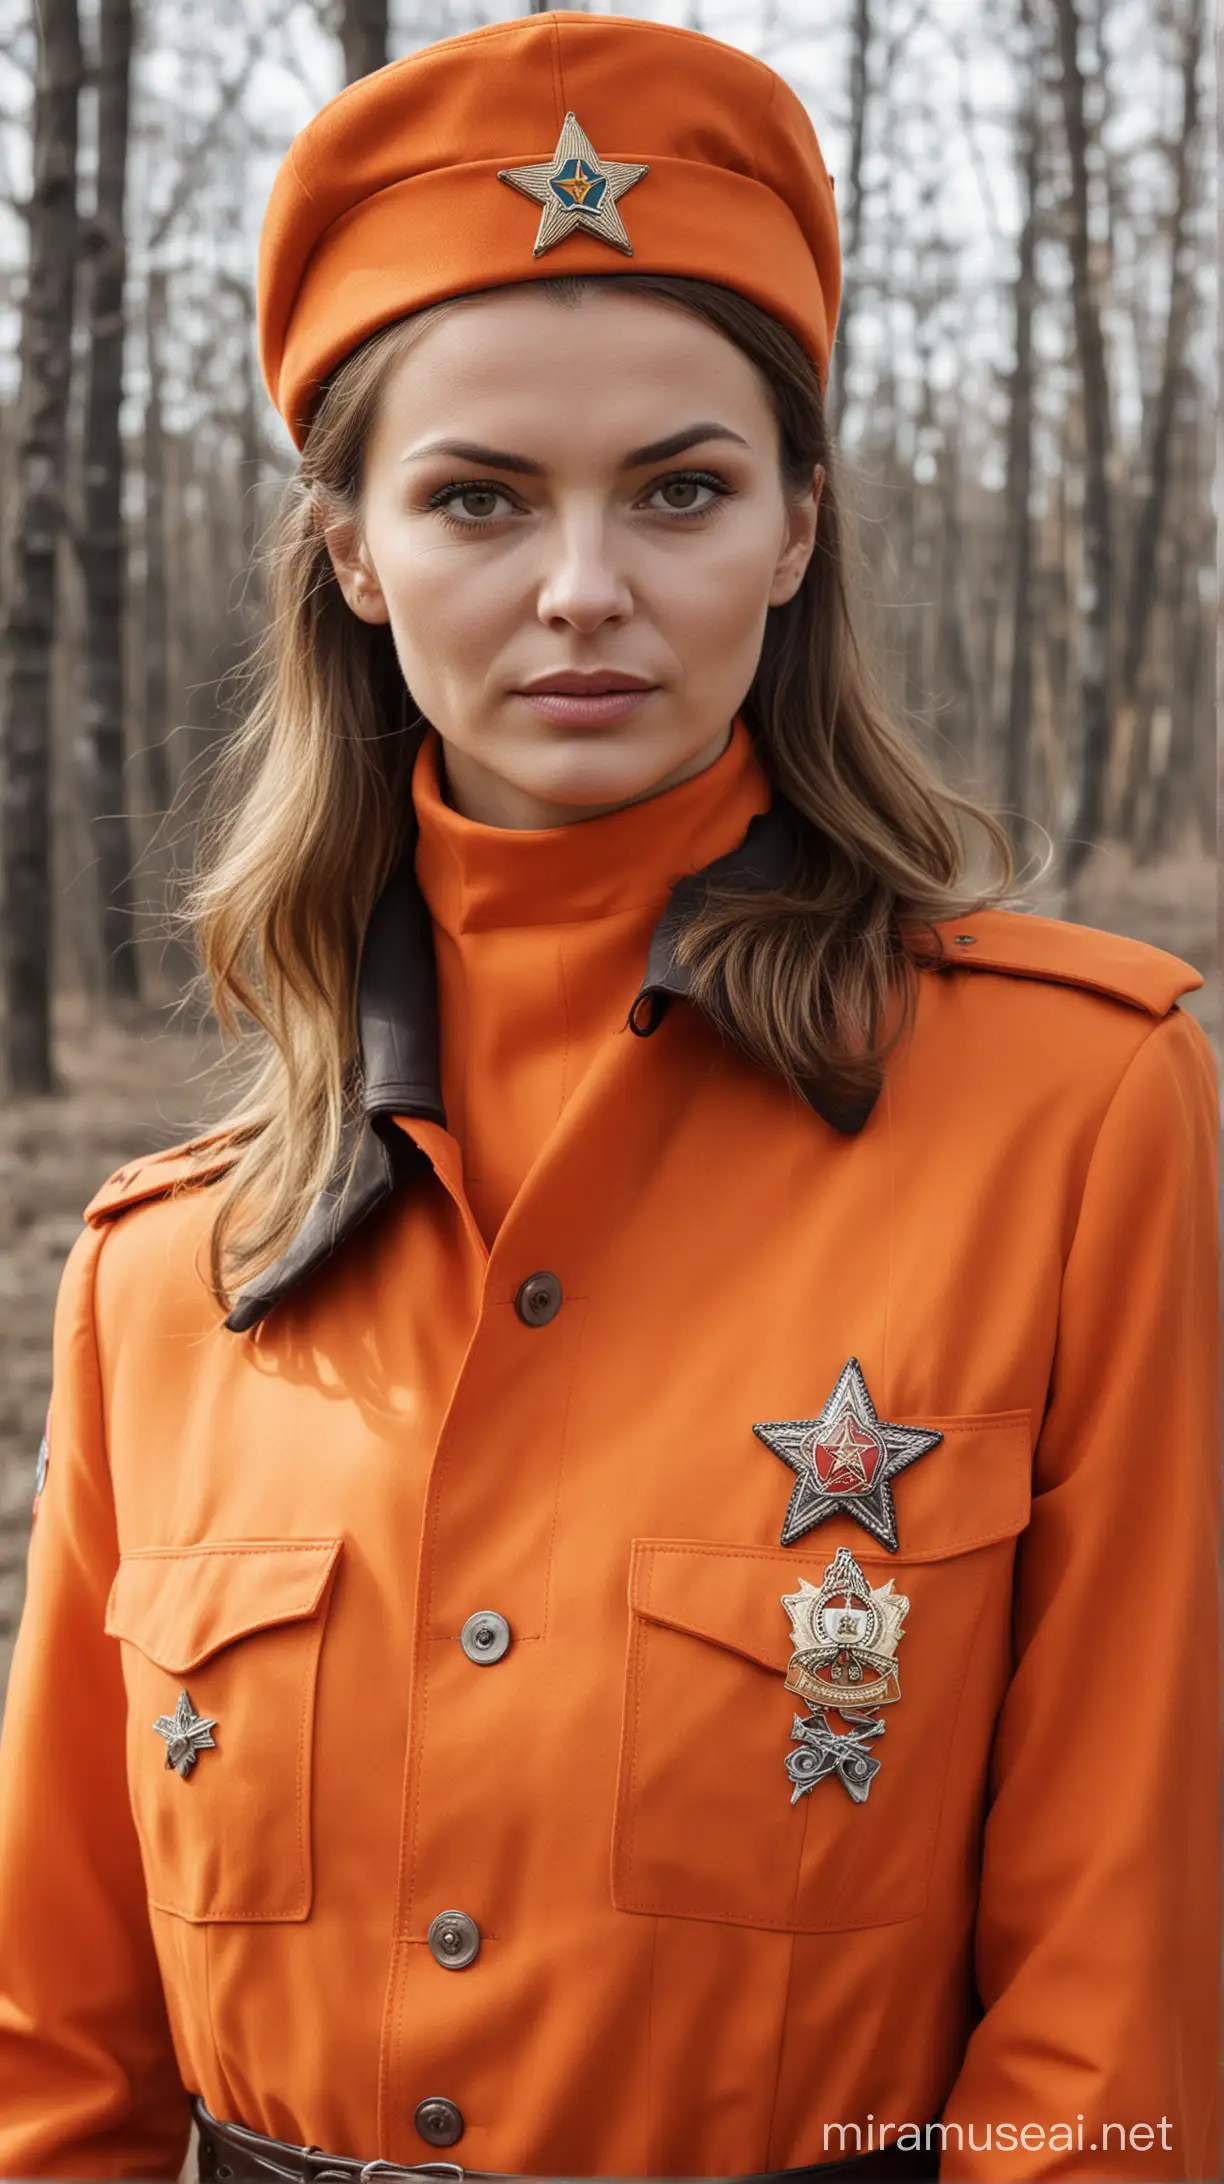 Female KGB Agent in Vibrant Orange Uniform